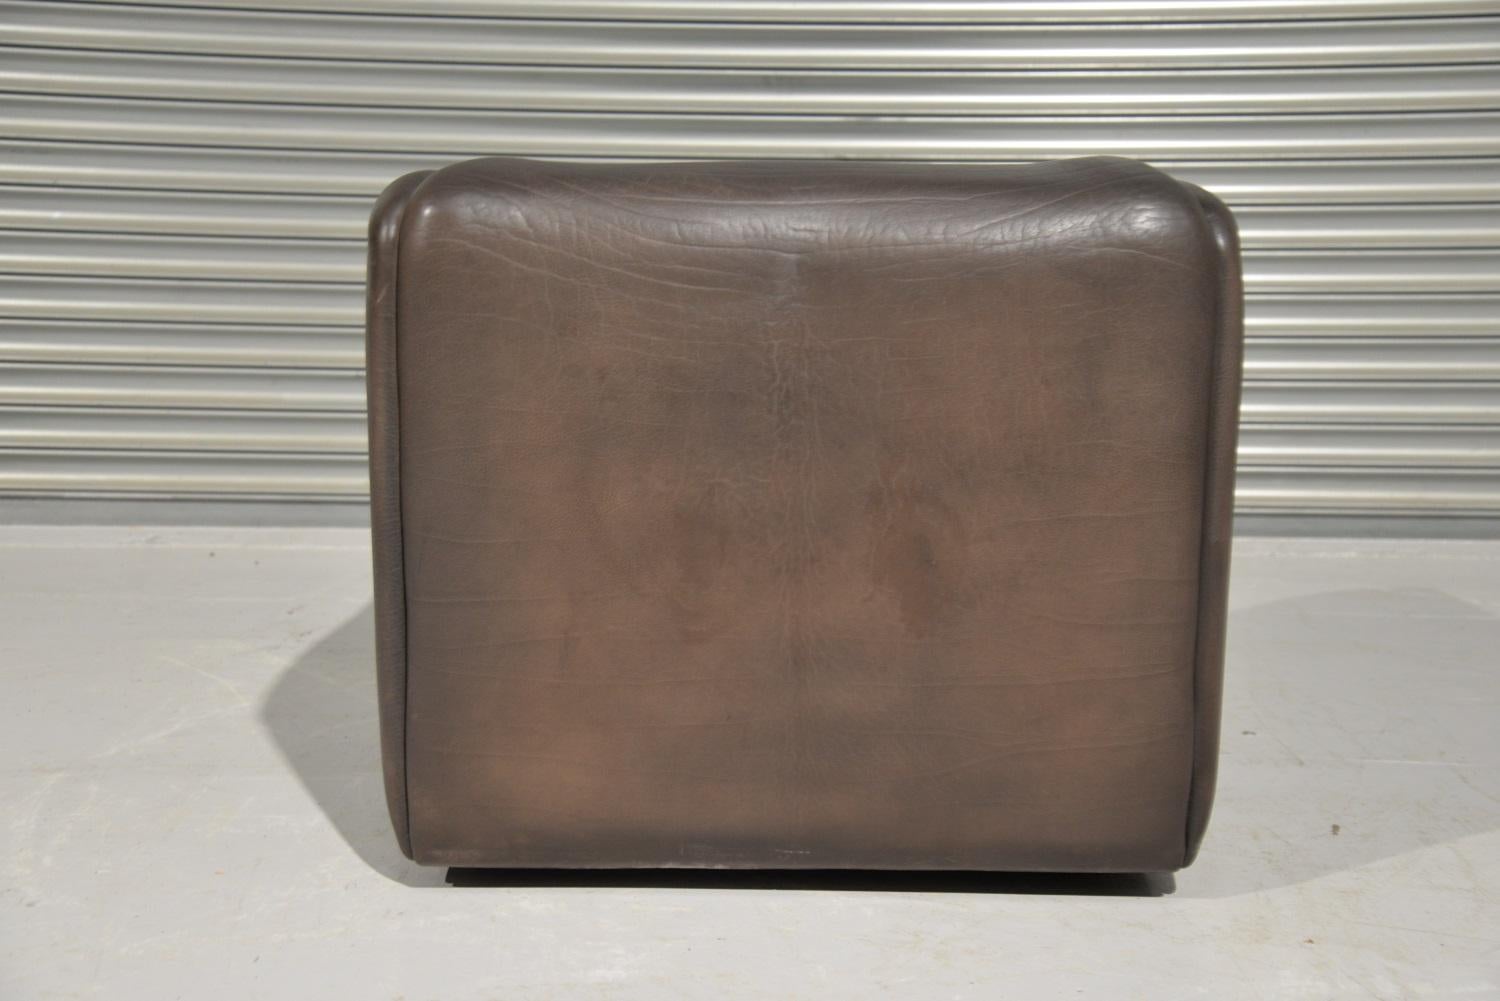 Vintage De Sede DS 47 Leather Armchair, Switzerland, 1970s For Sale 1